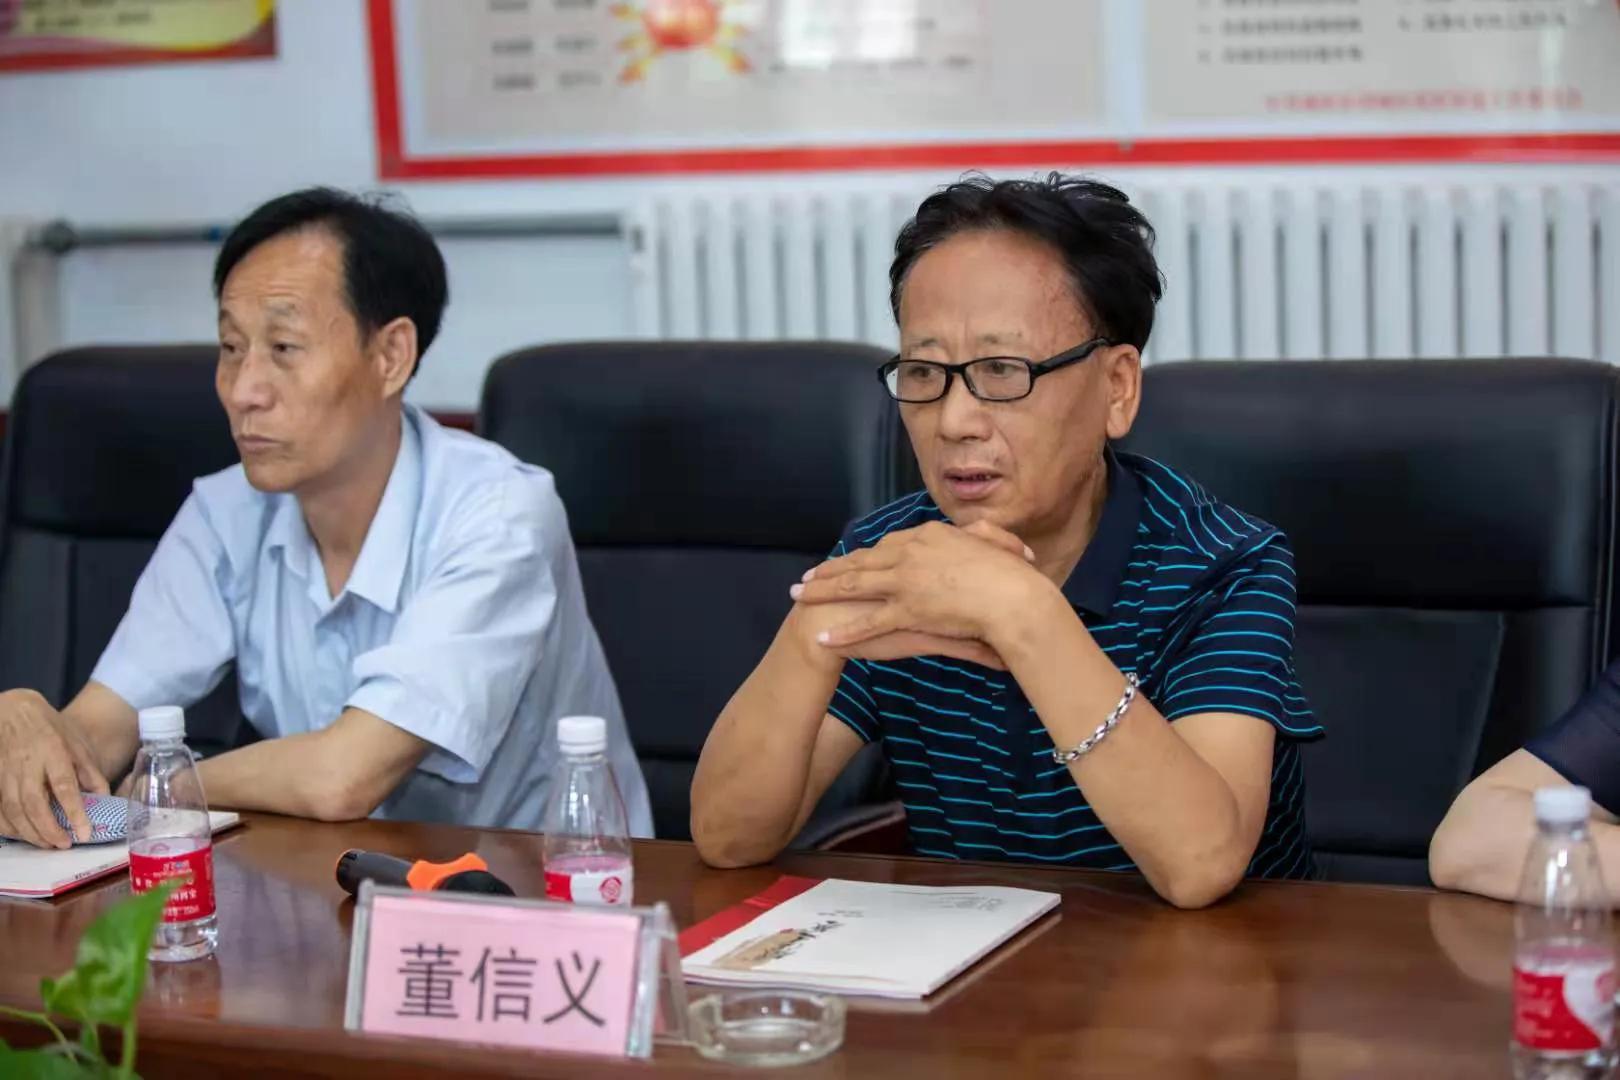 西咸新区作家协会庆祝中国共产党成立100周年